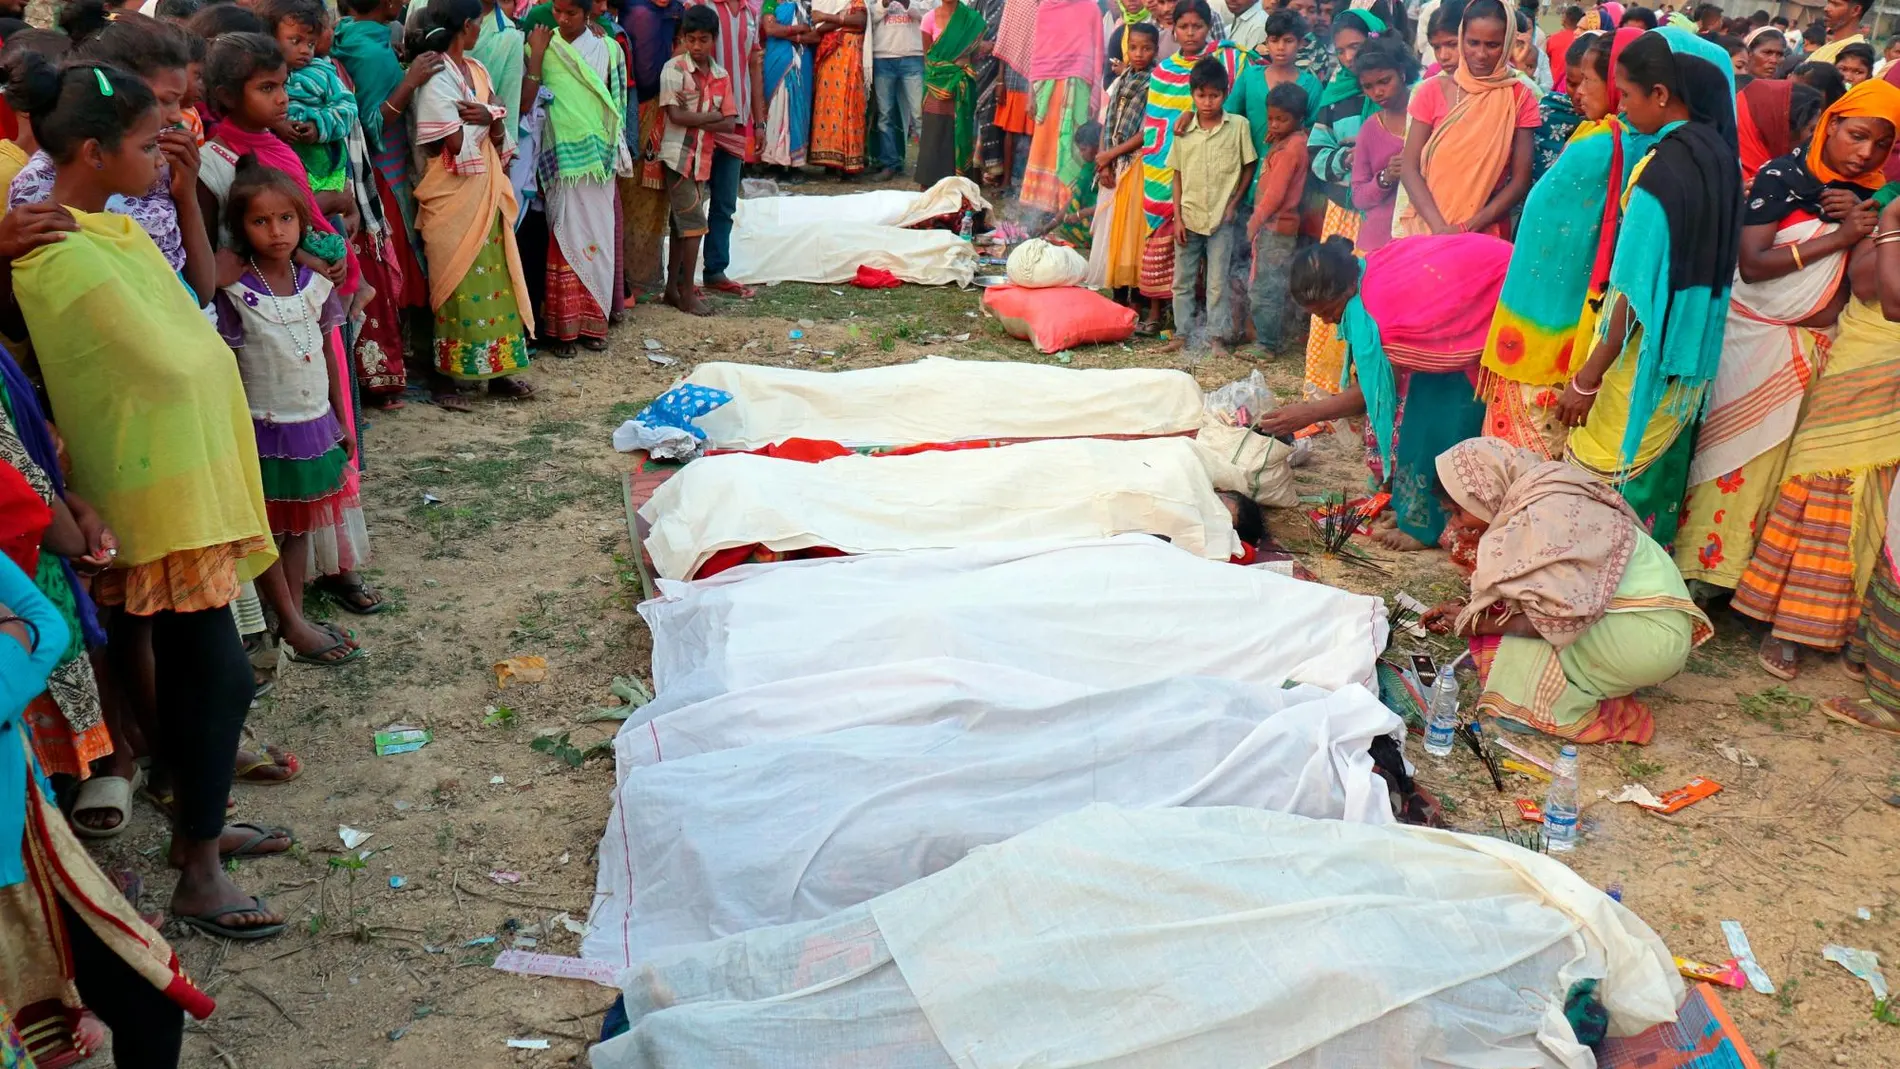 Las víctimas murieron debido a que bebieron una infusión de metanol / Foto: Reuters